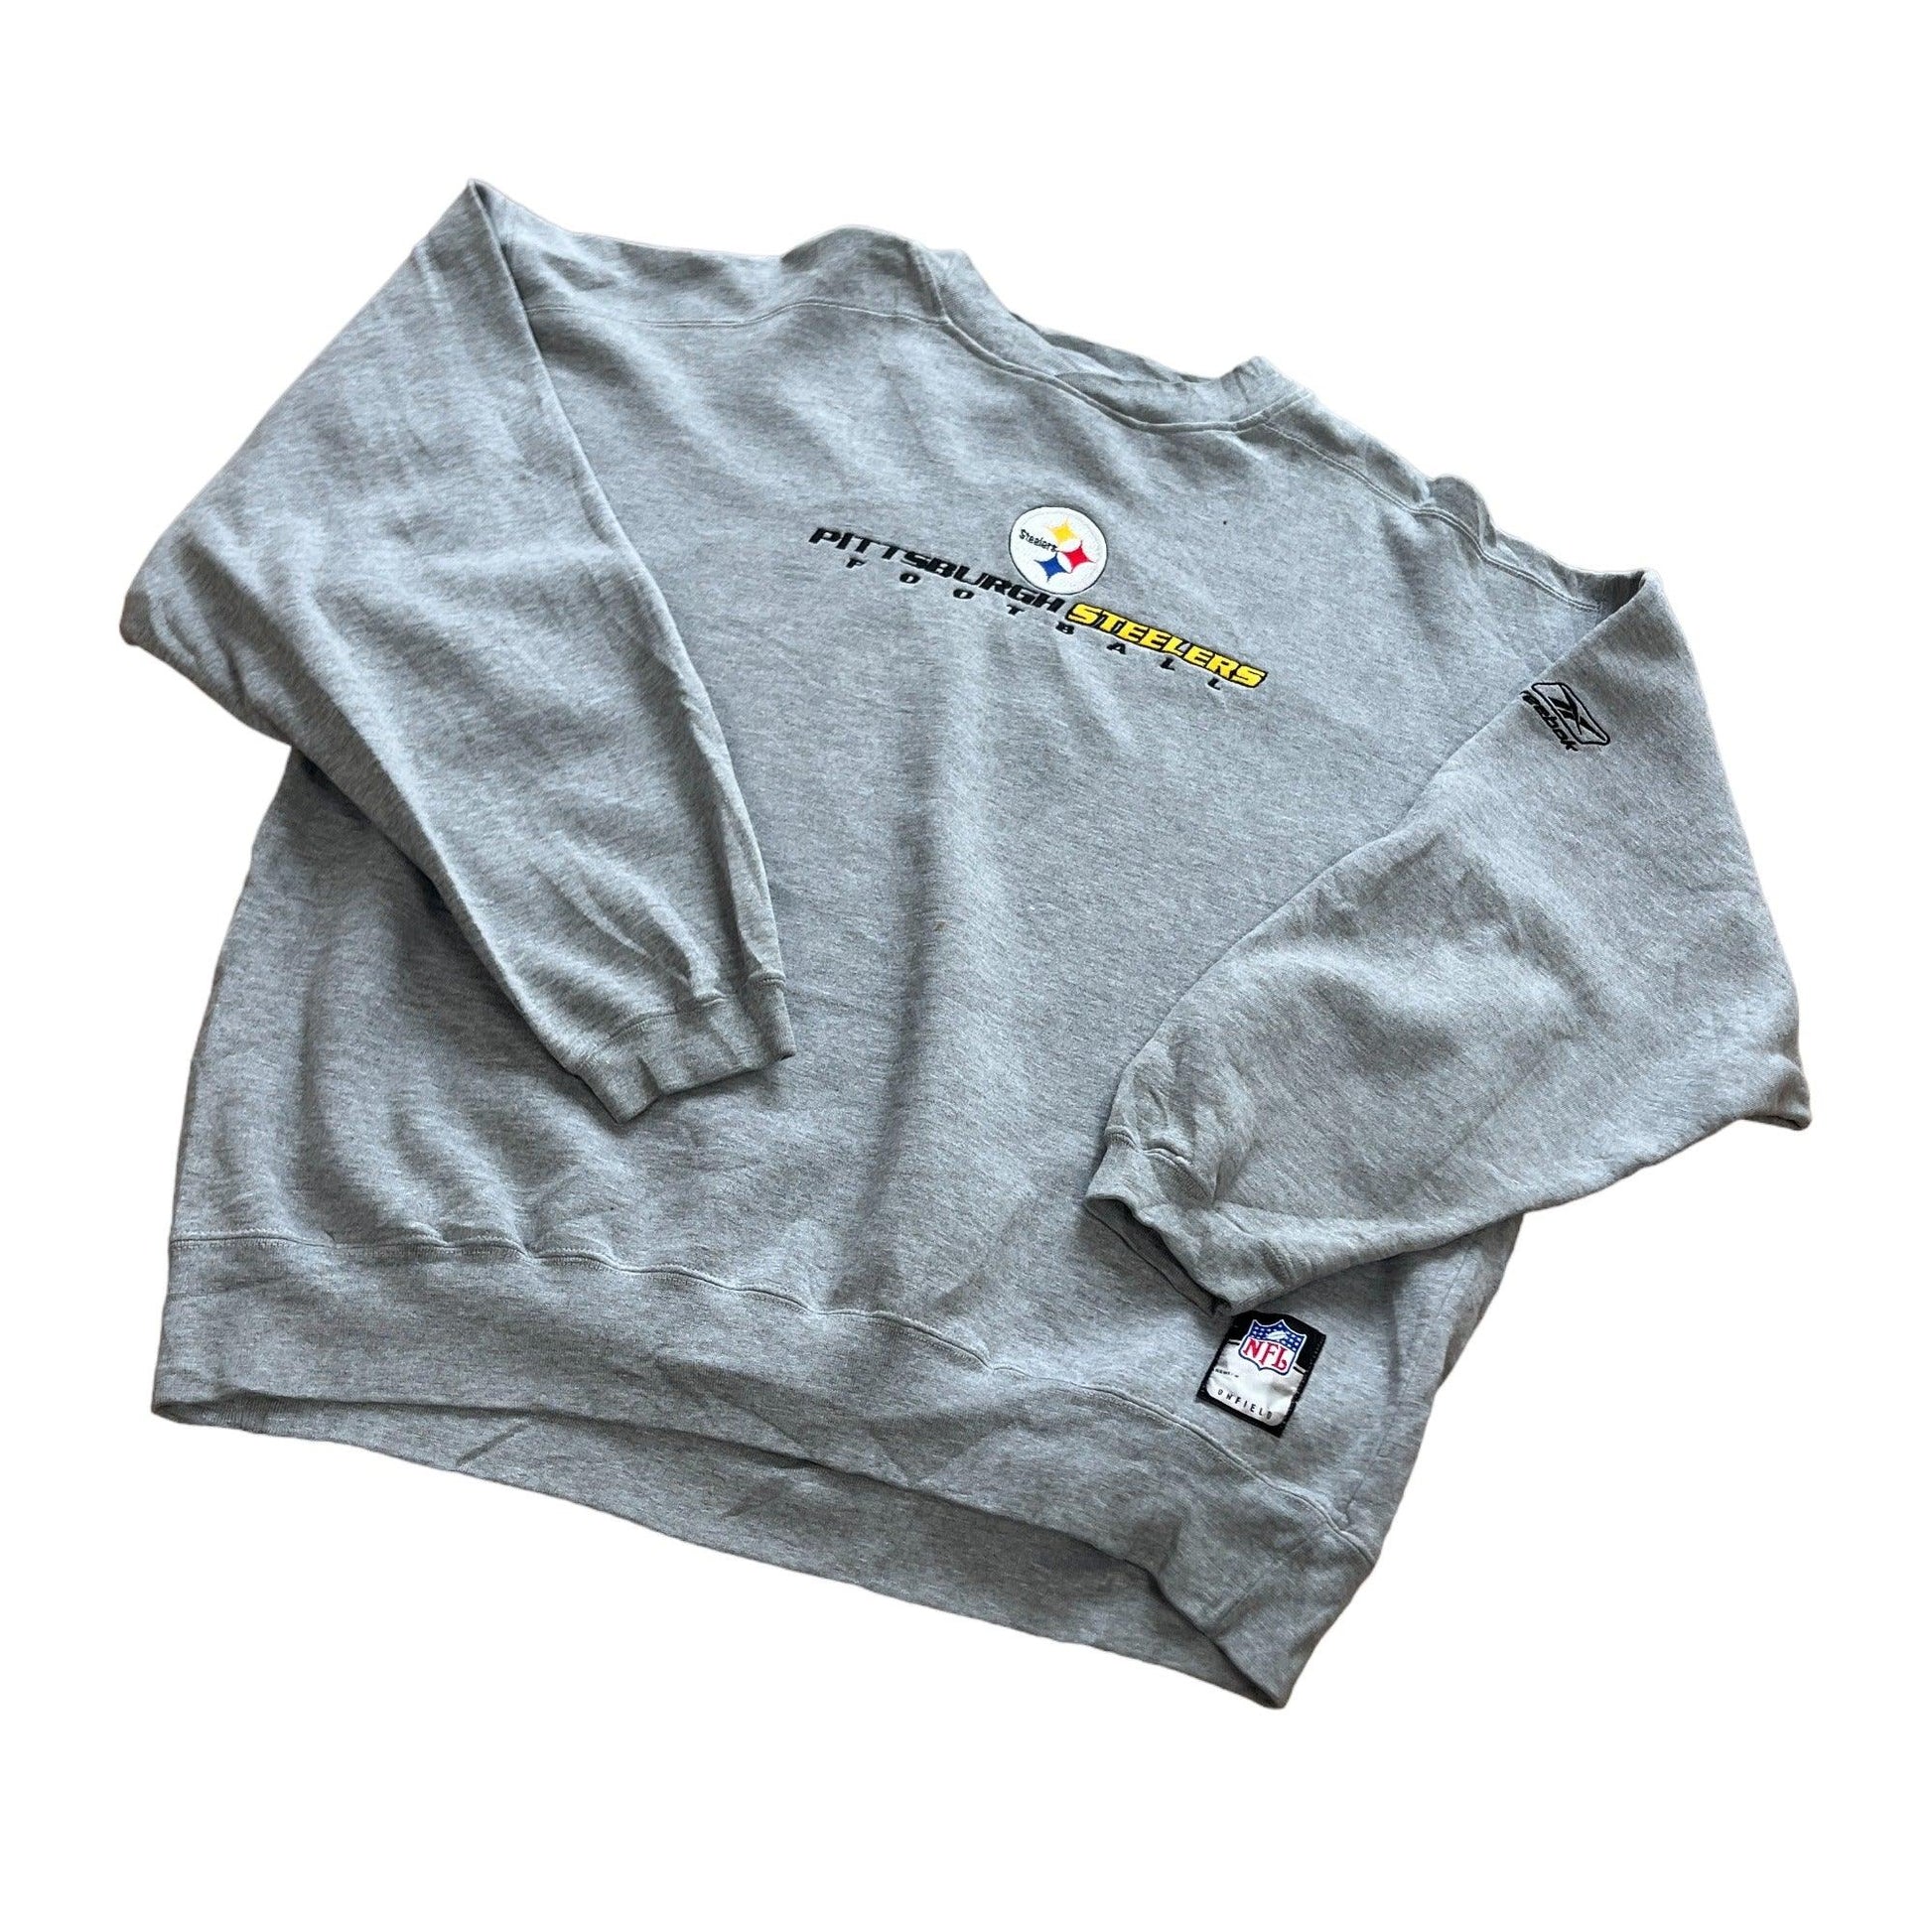 Vintage Grey Pittsburgh Steelers Sweatshirt - Extra Large - The Streetwear Studio